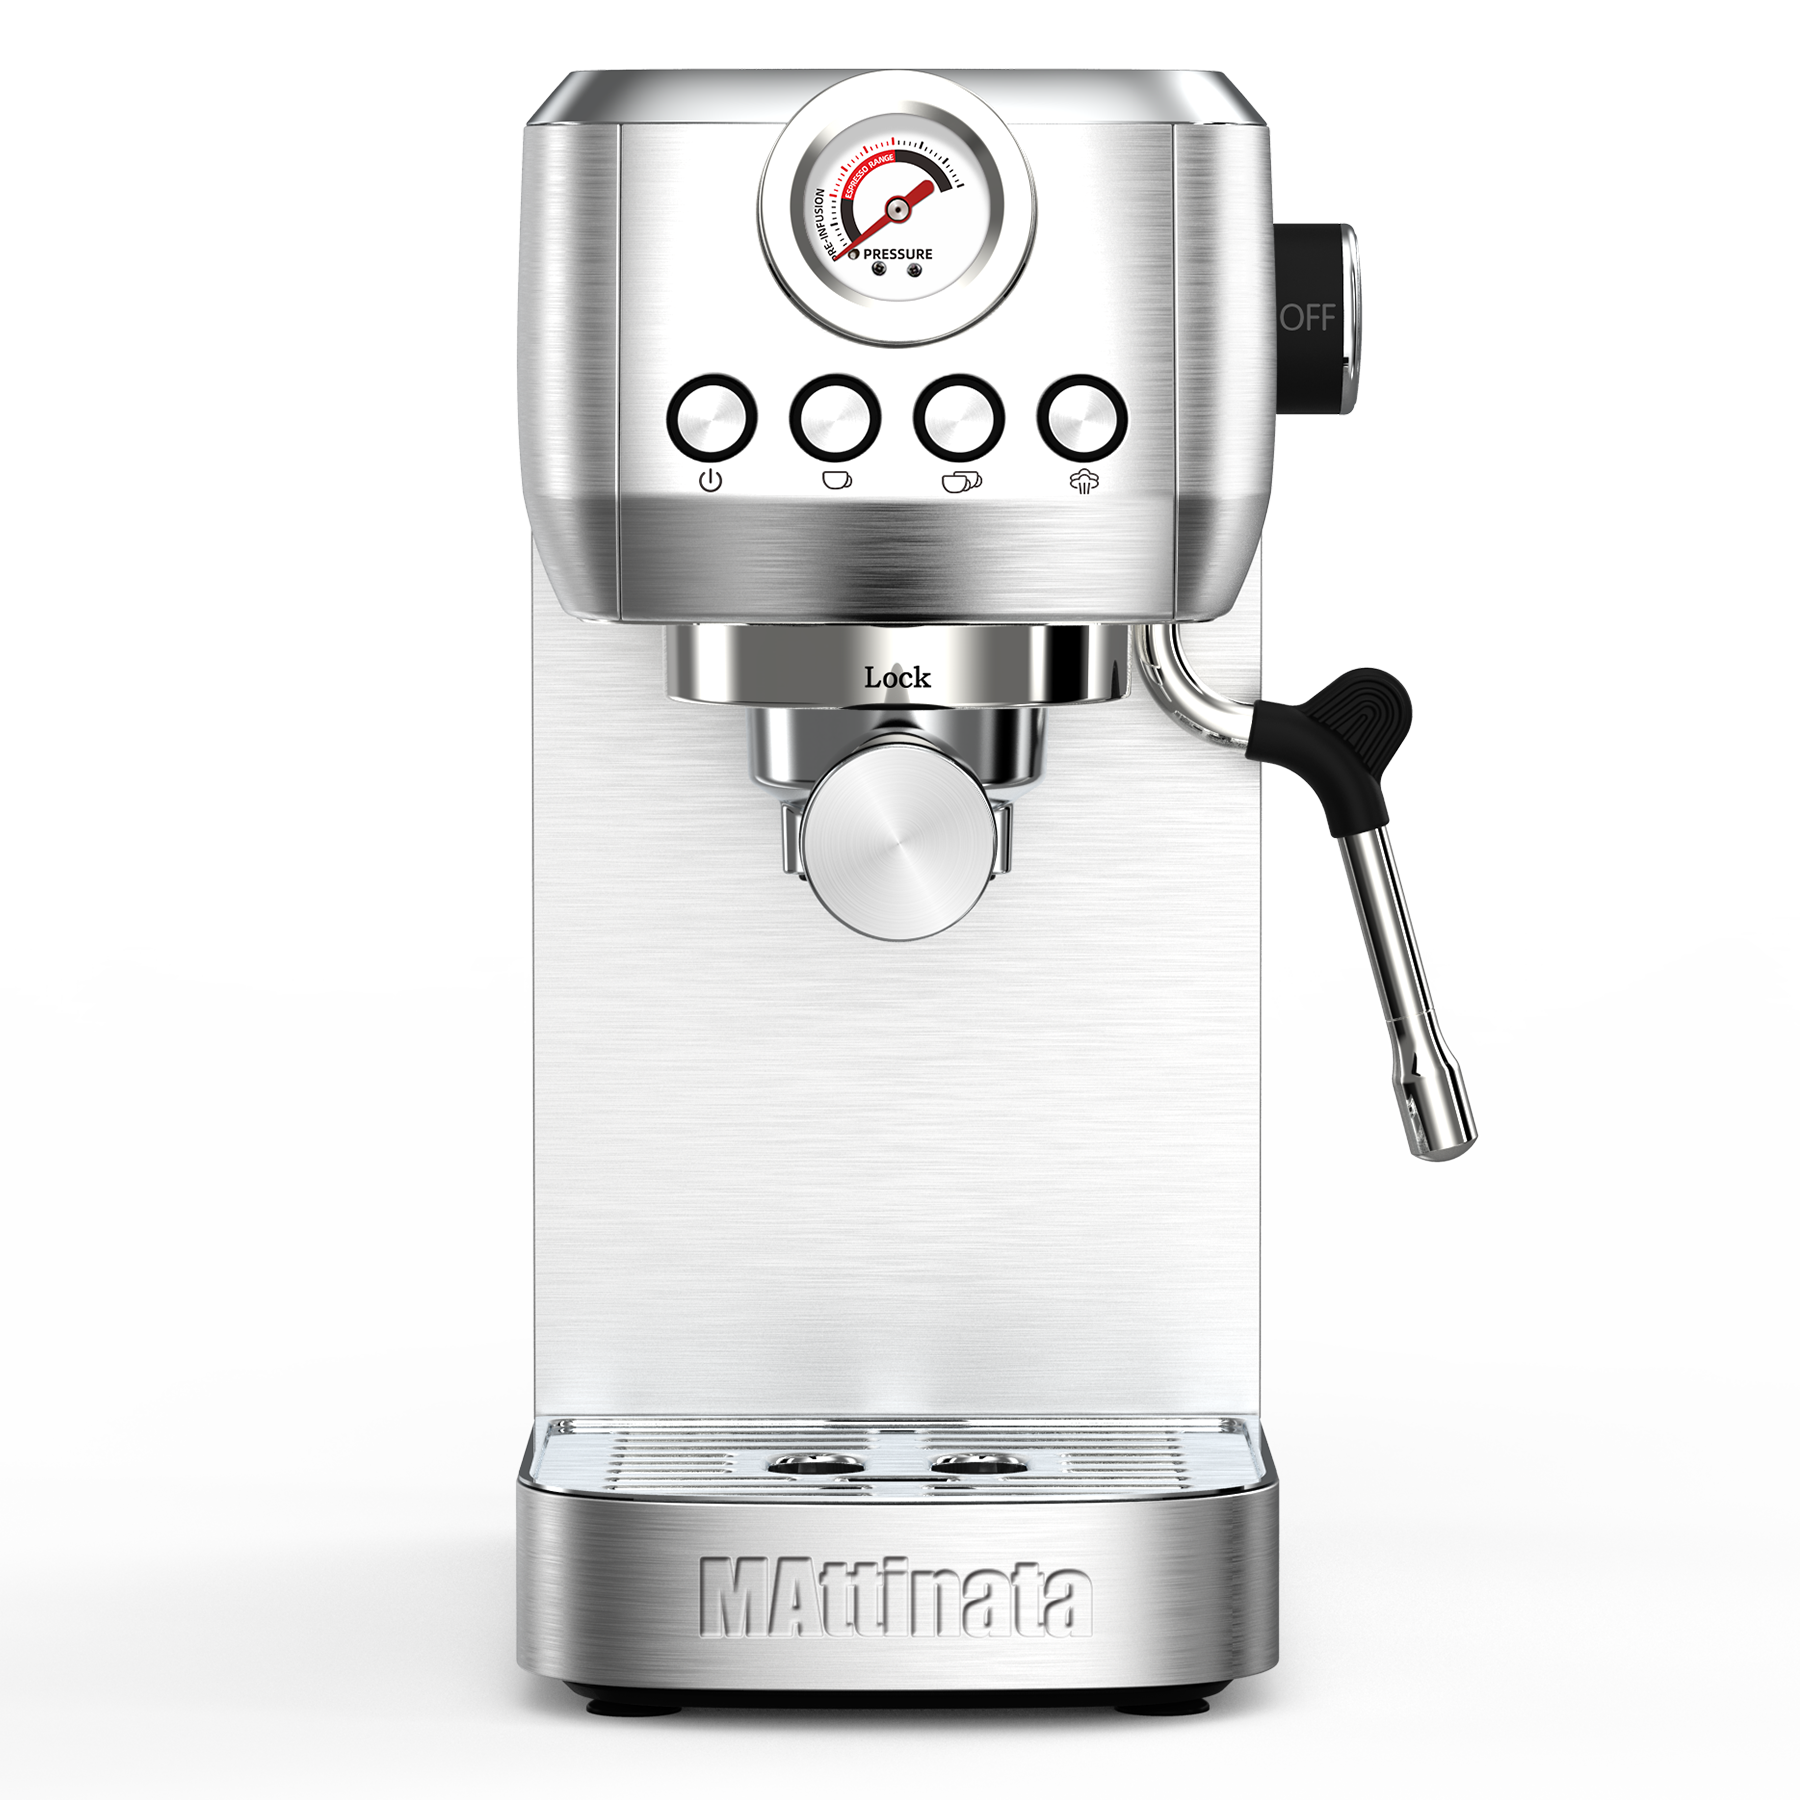 MAttinata Espresso Machine, 20 Bar Cappuccino Machine with Automatic Milk  Frother, Retro Coffee Machines for Home Latte Cappuccino Mom Dad Coffee